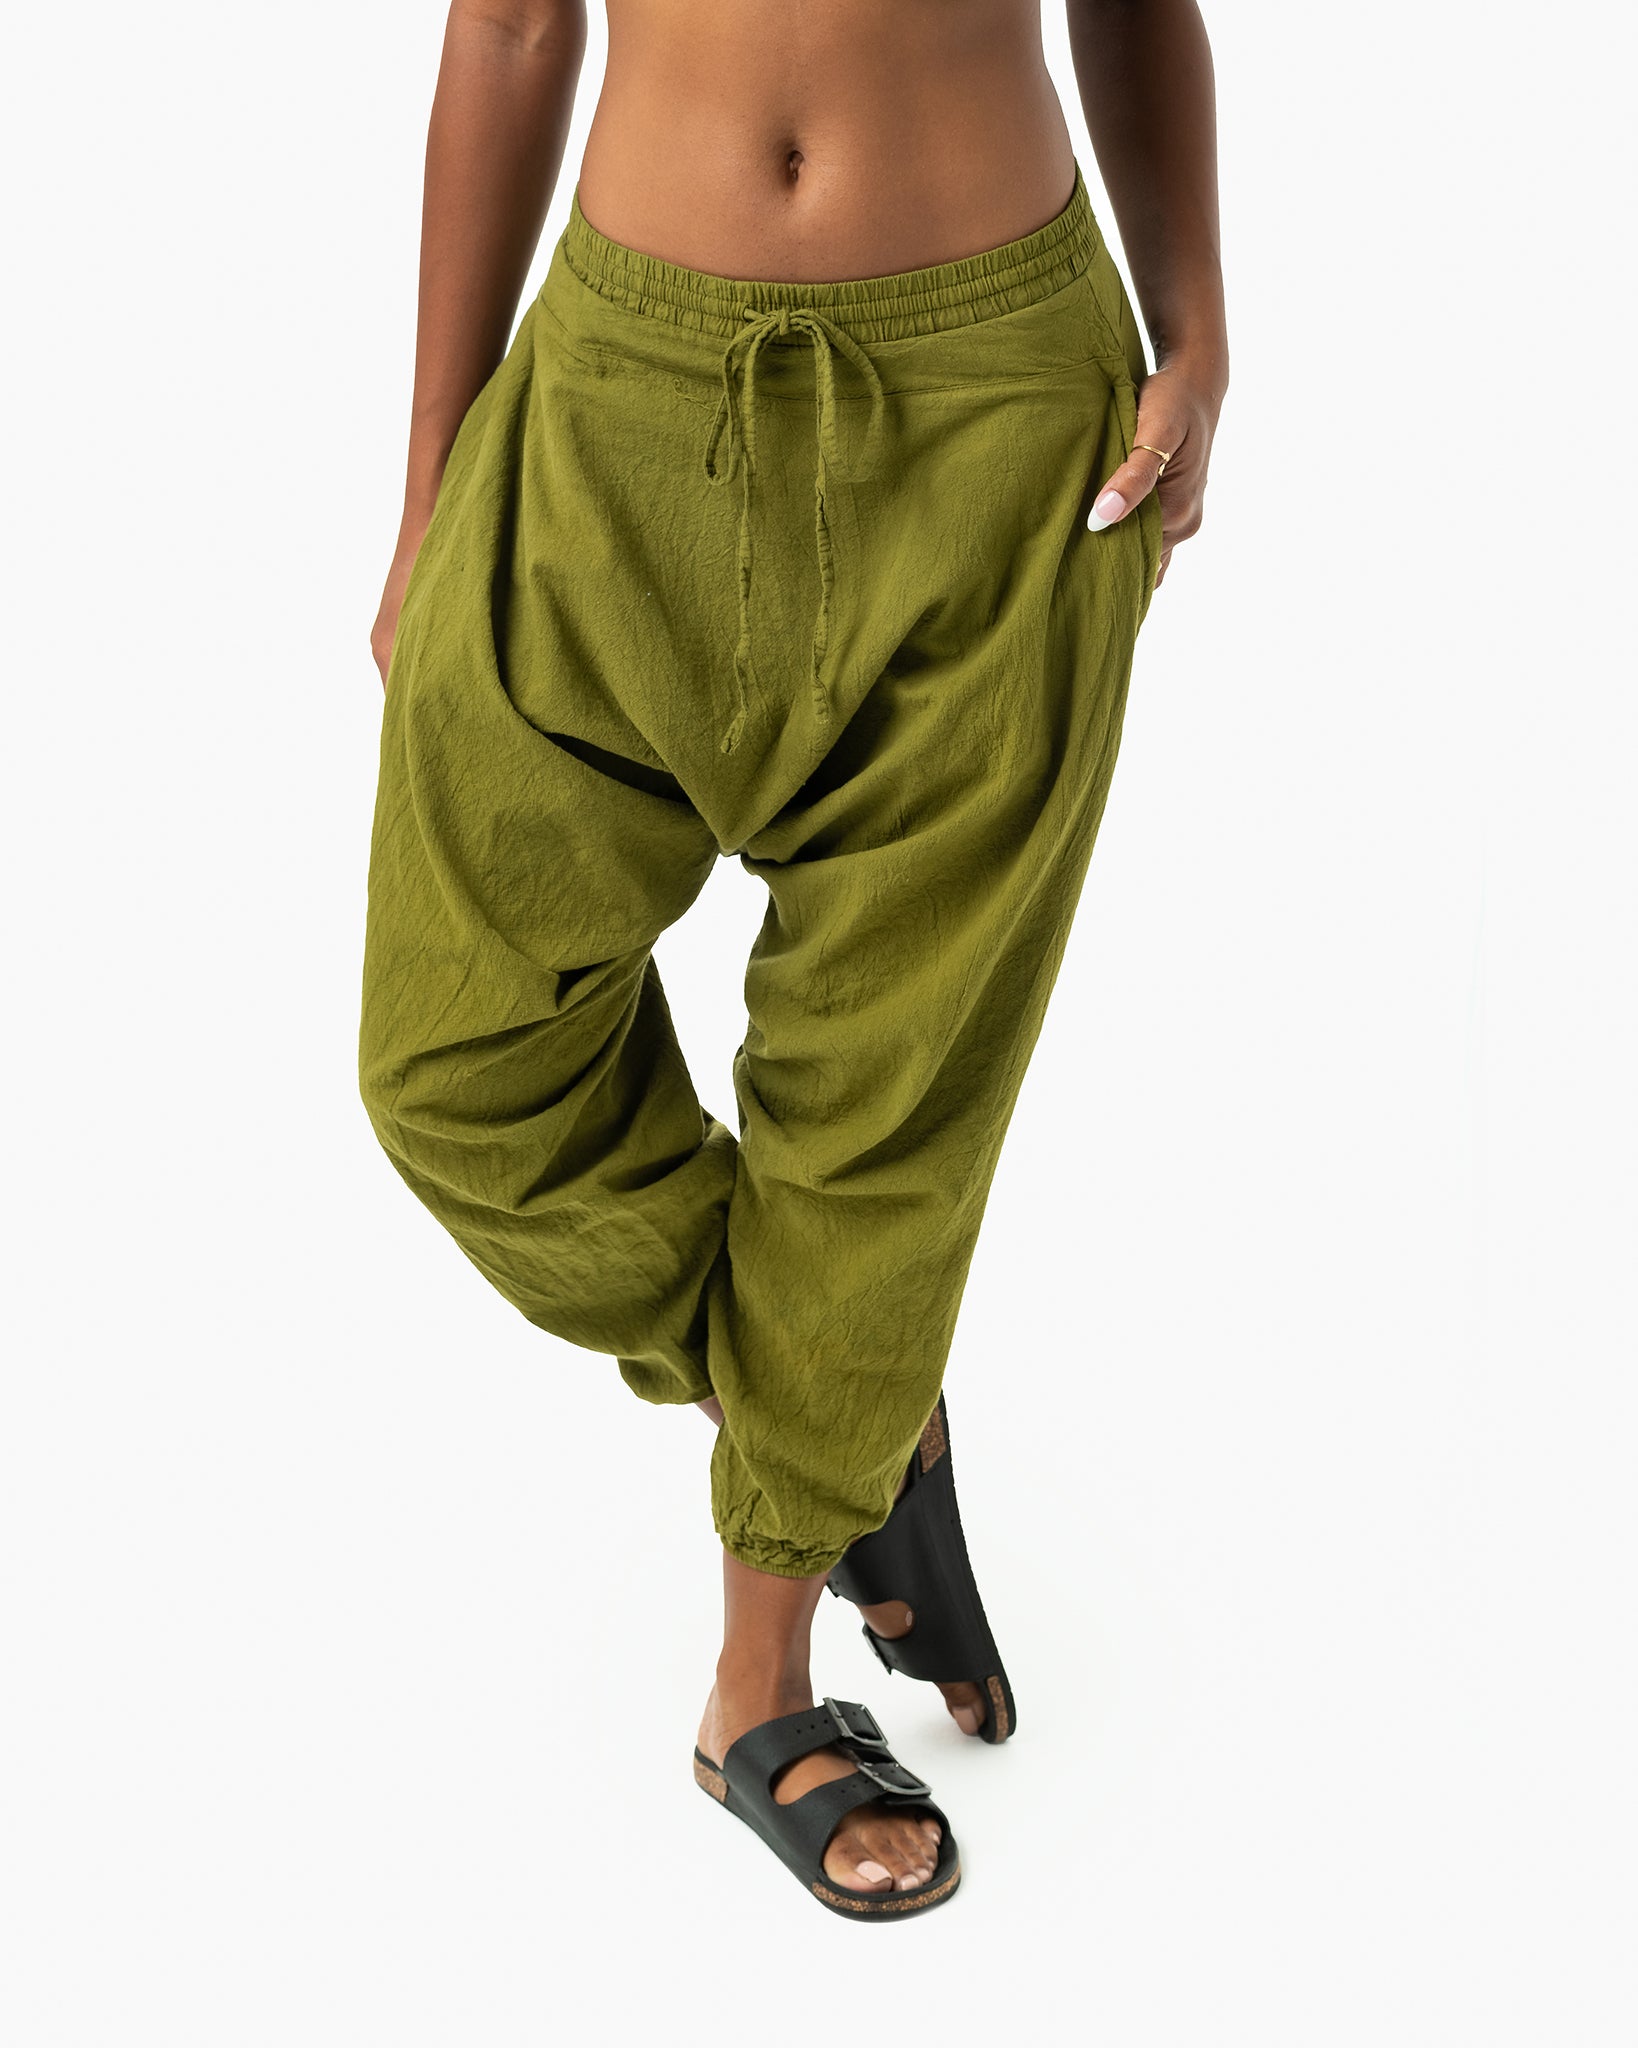 NAMA Women's Loose Fit Yoga Pants, Genie Pant